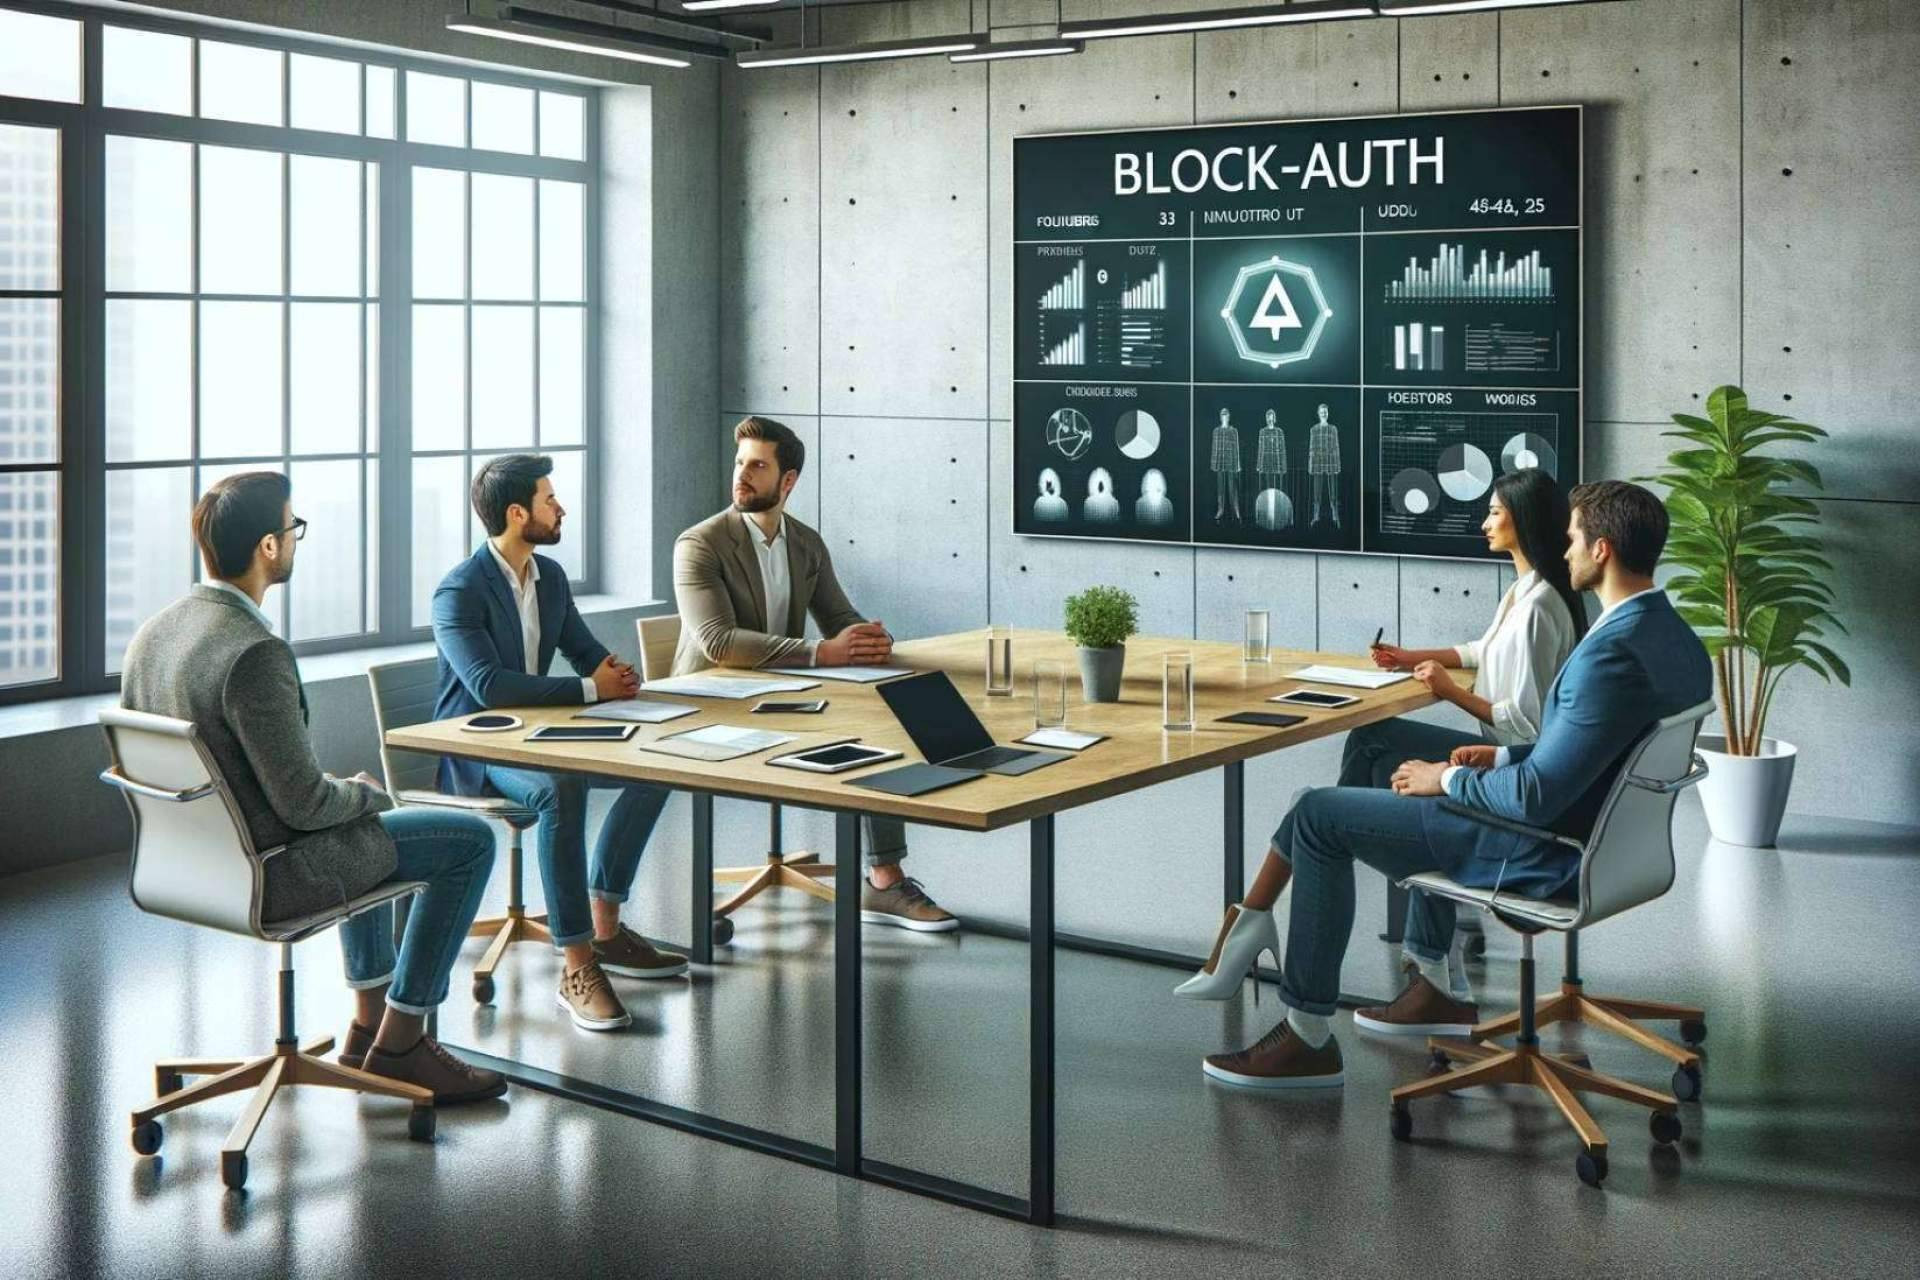  Invertir en ciberseguridad y blockchain, Block-Auth lanza su primera ronda de inversión 